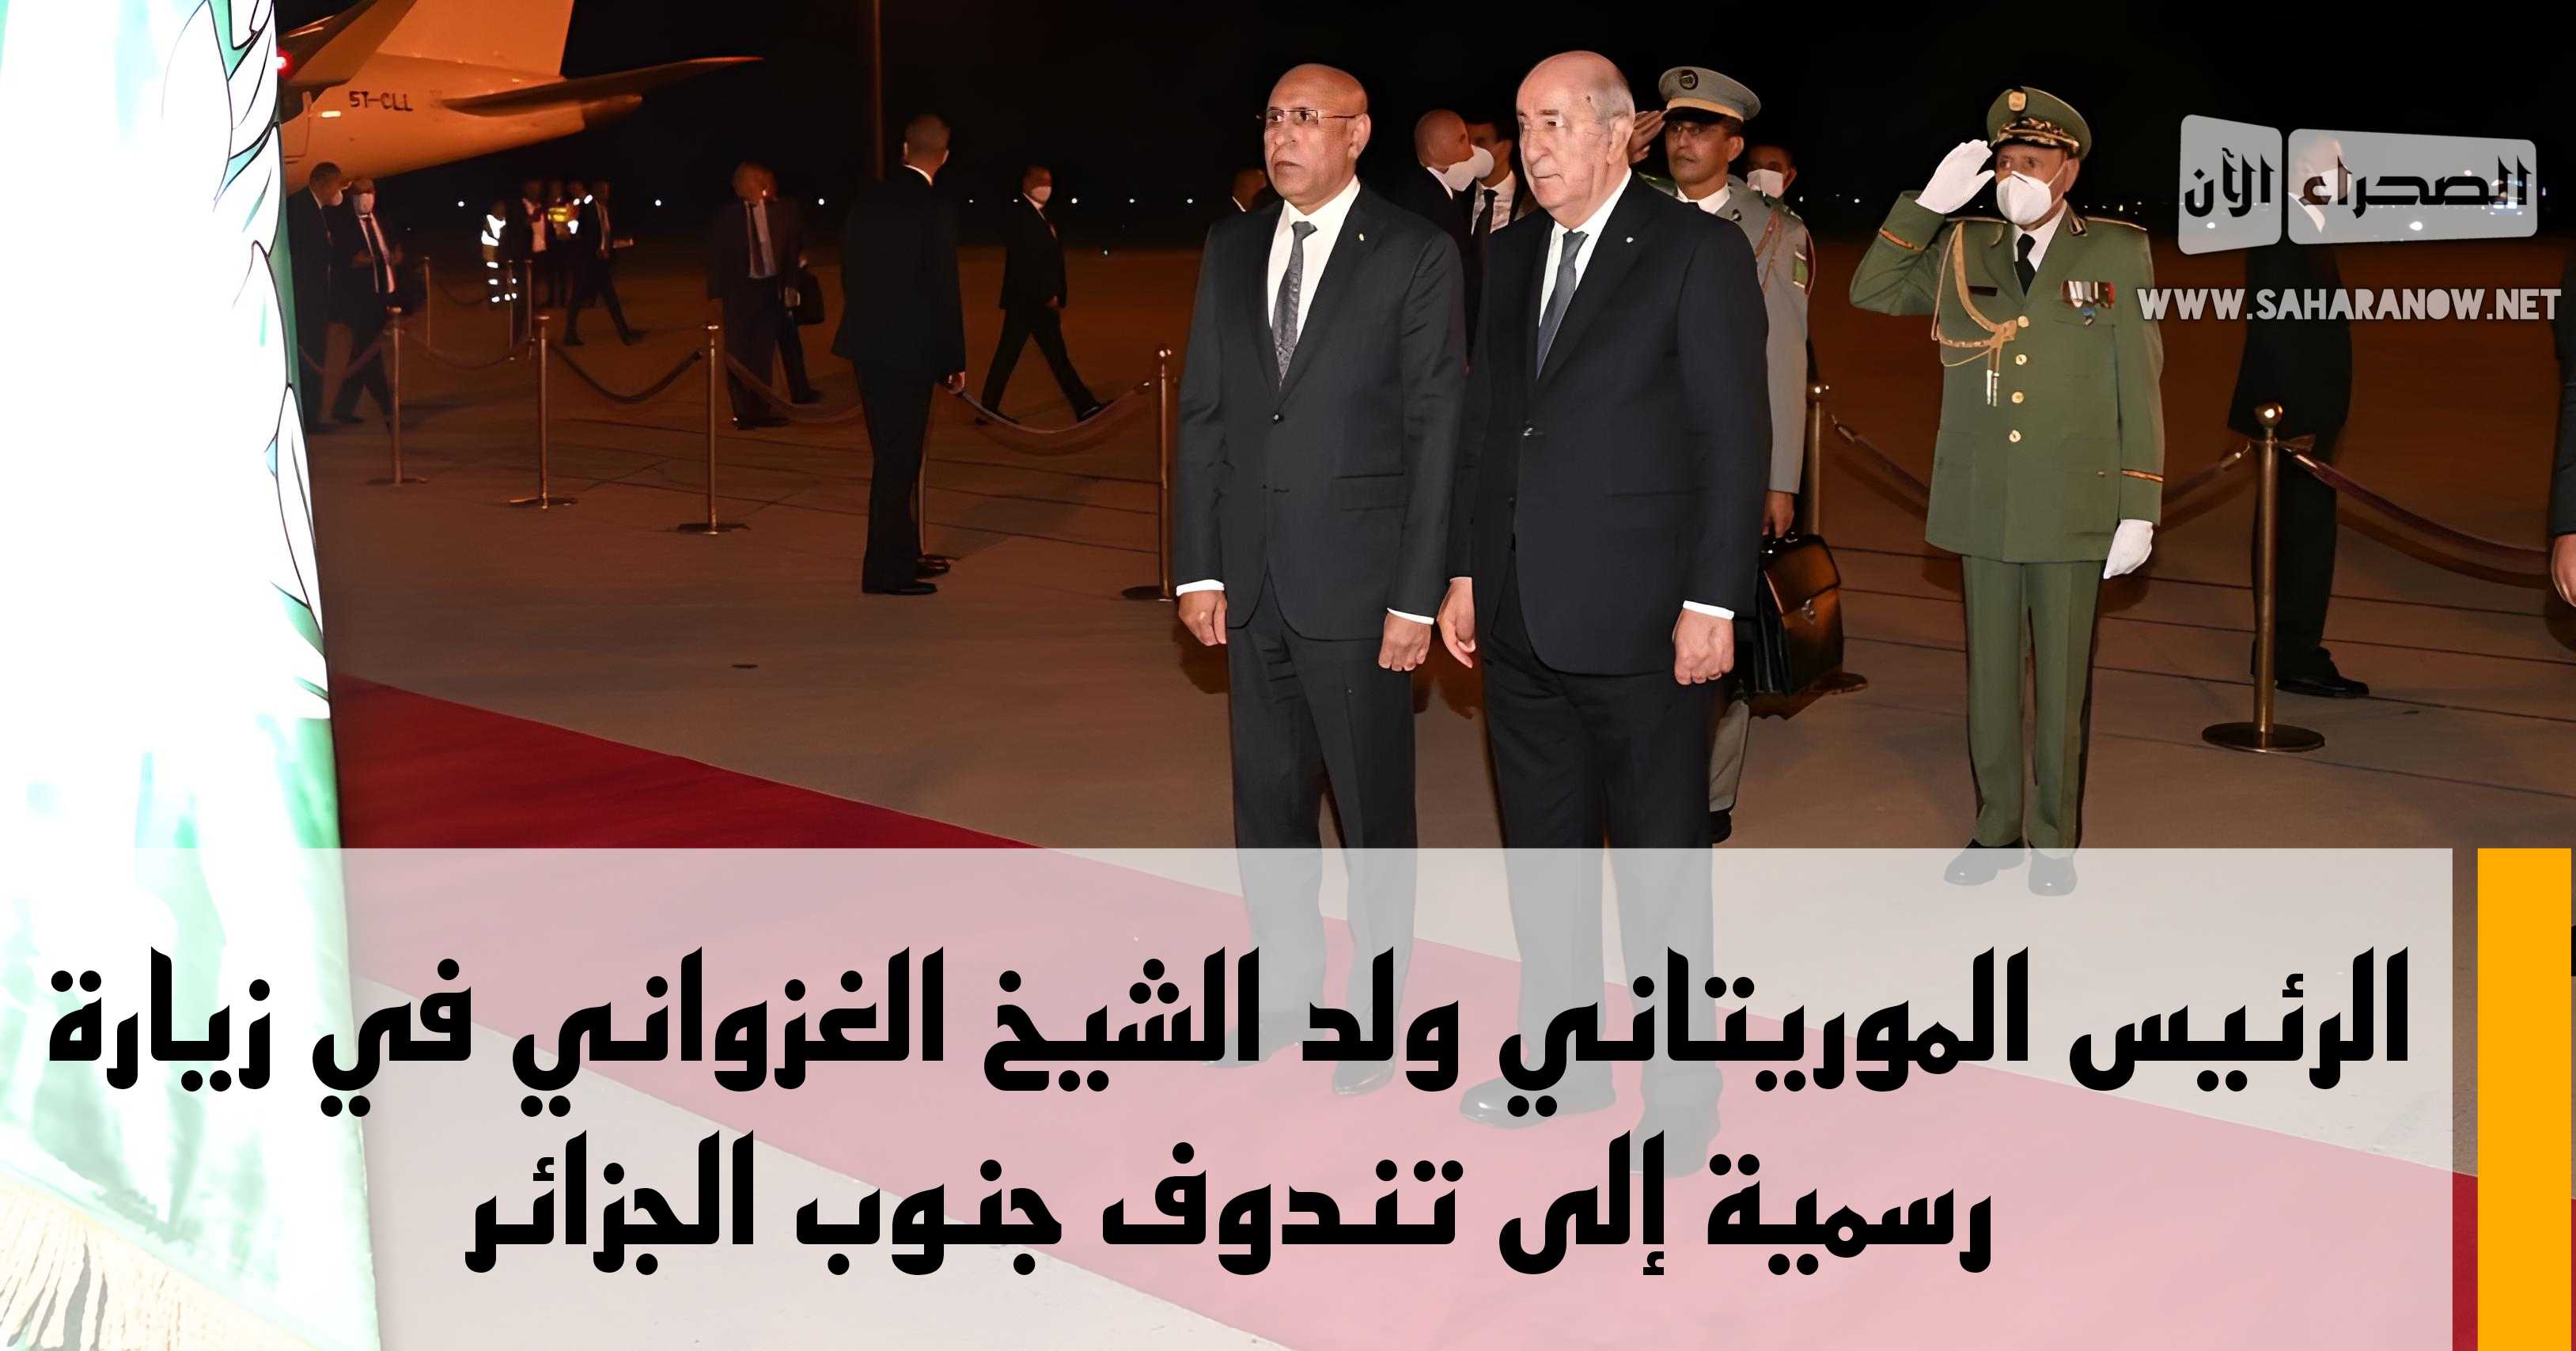 الرئيس الموريتاني ولد الشيخ الغزواني في زيارة رسمية إلى تندوف جنوب الجزائر 